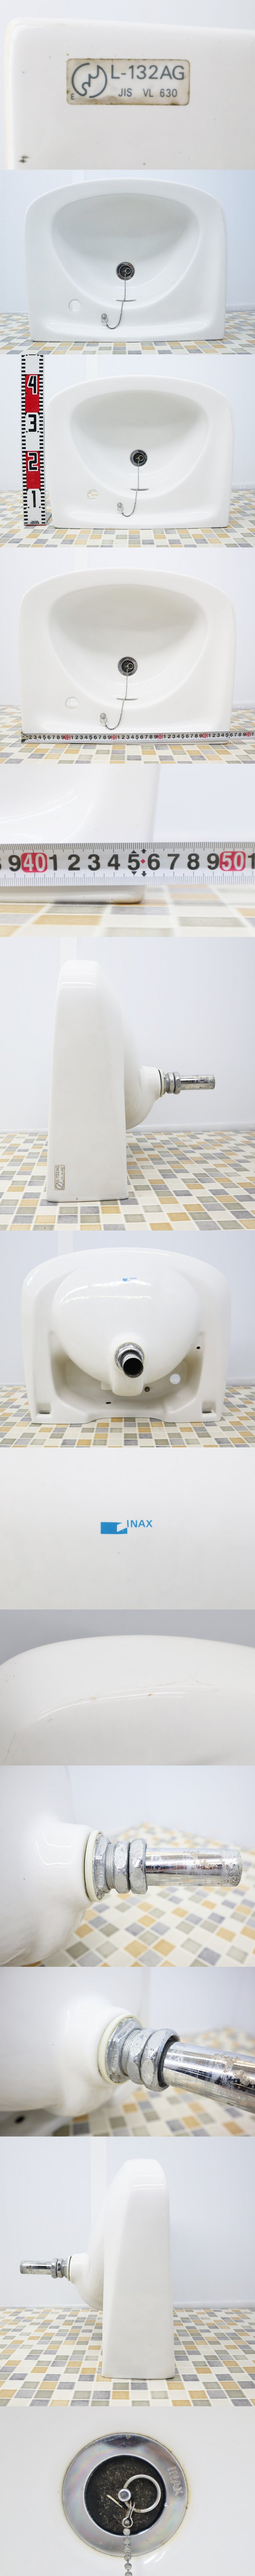 世界の LUYI レトロ 洗面ボウルセット 置き型 手洗いボウル 洗面台 610x345x110mm